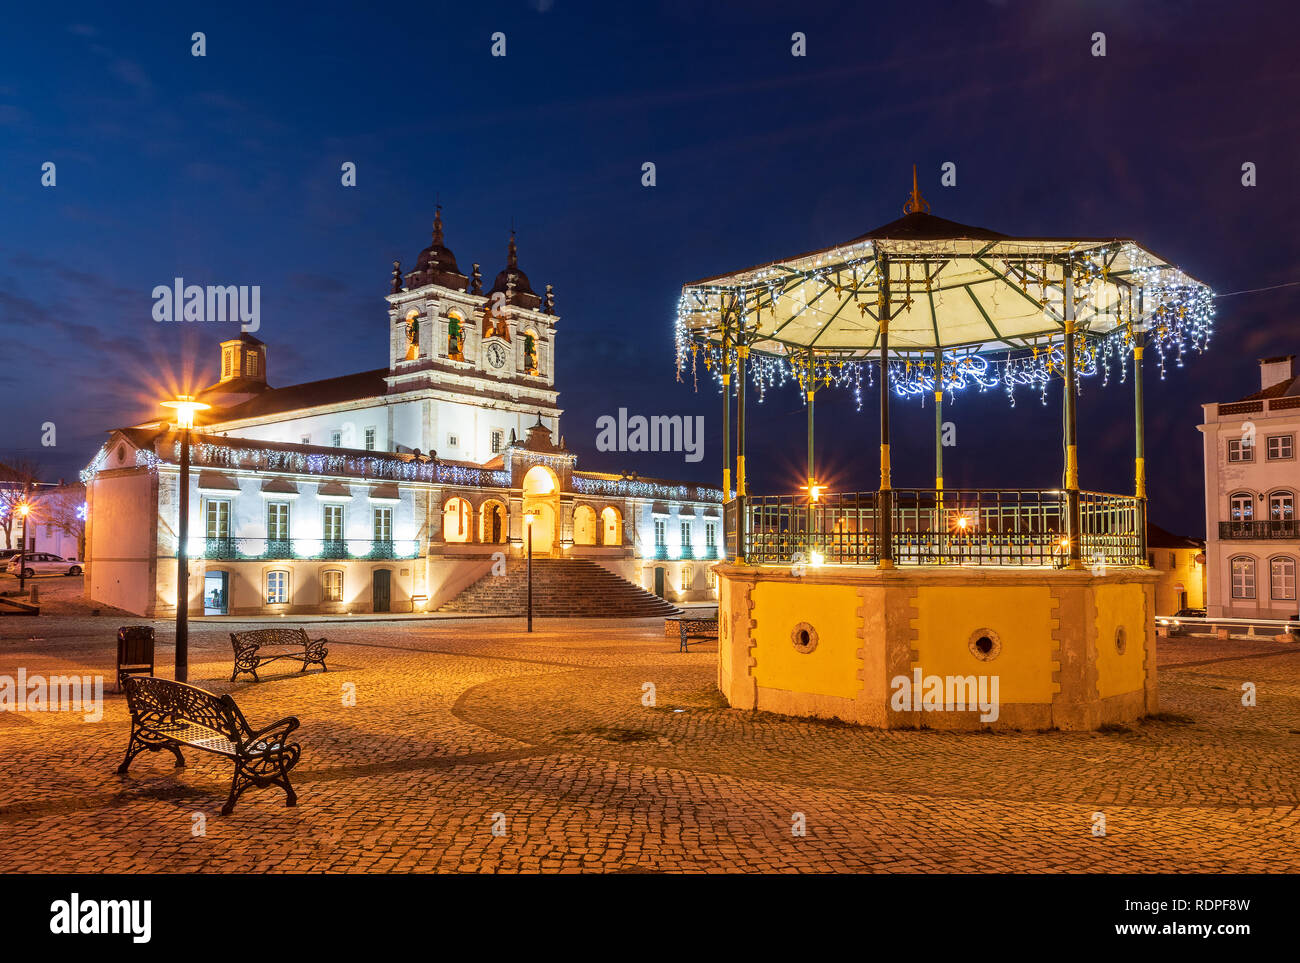 Avis de Nossa Senhora da Nazaré avec kiosque carré en premier plan et le sanctuaire de Nossa Senhora da Nazaré en arrière-plan, avec des lumières de Noël. Banque D'Images